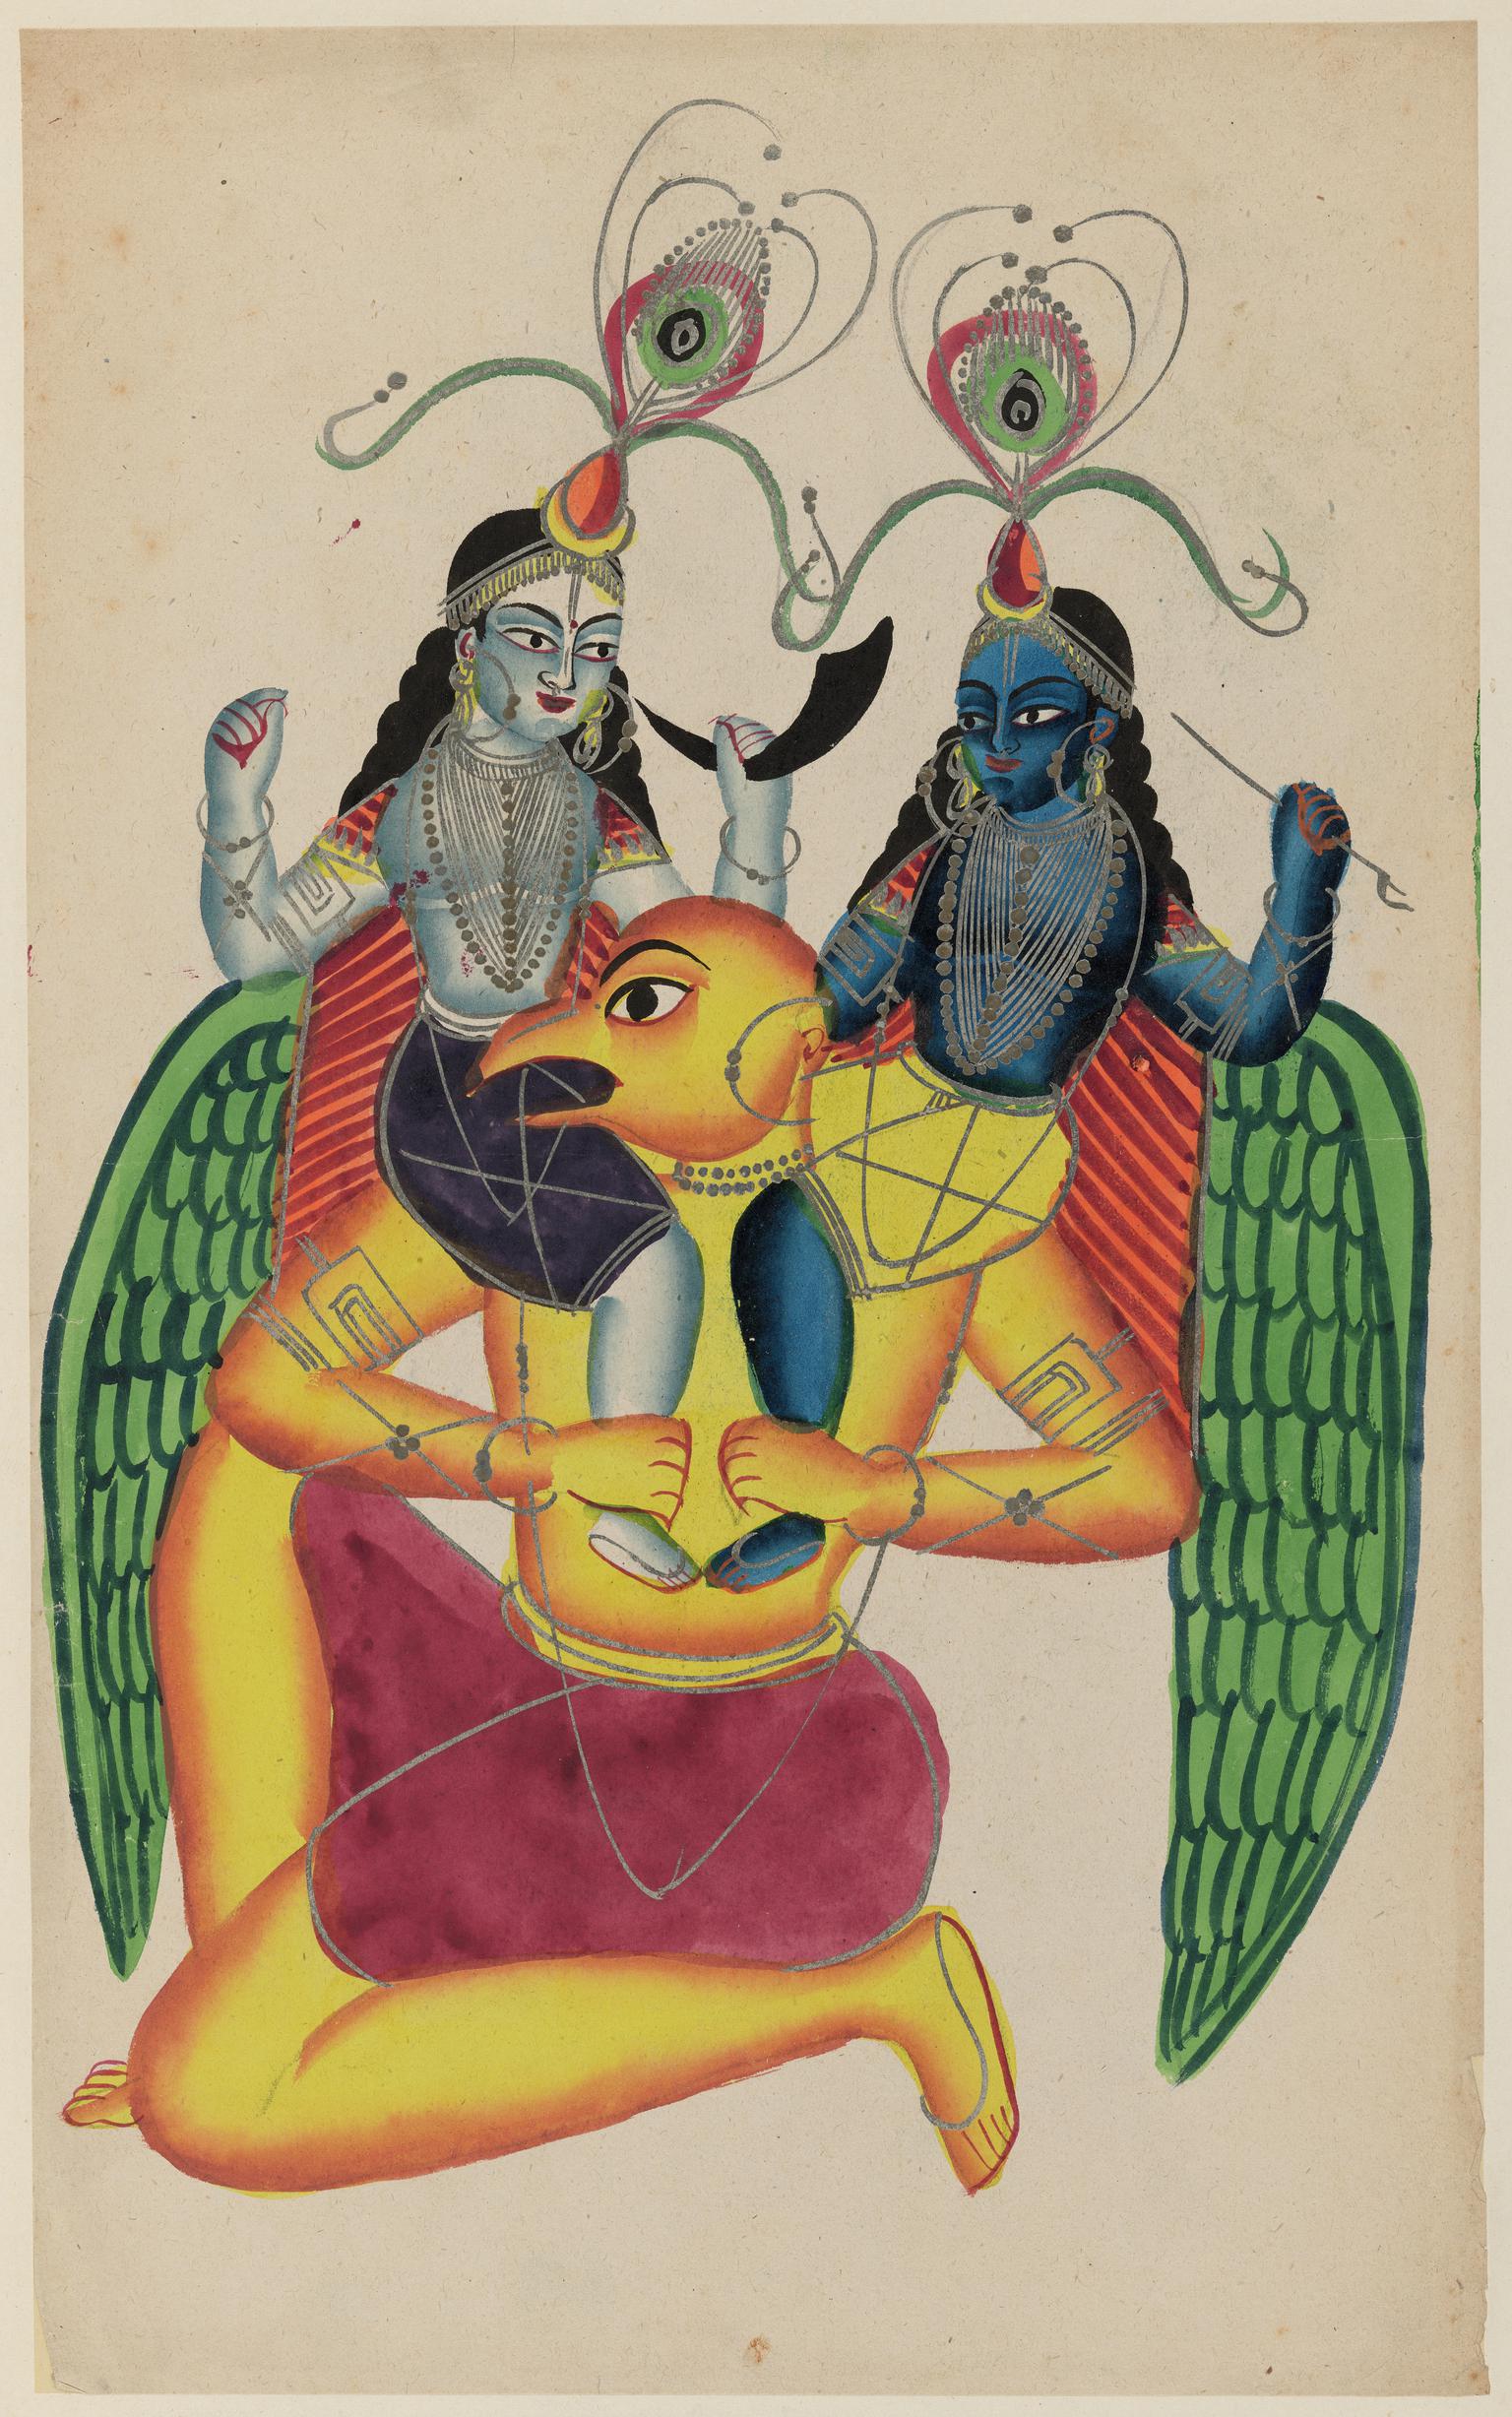 Krishna and Balaram riding on Garuda